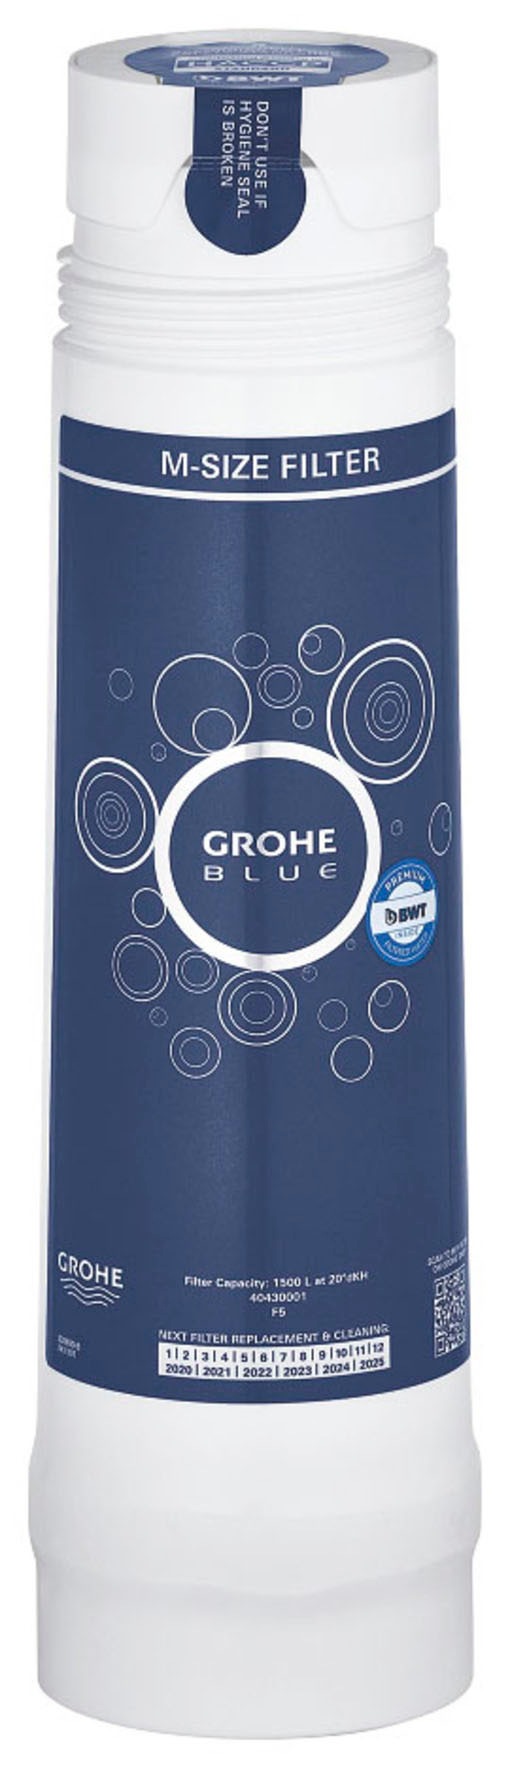 Grohe Wasserfilter »Blue«, (Packung), reduziert Kalk und Schwermetalle